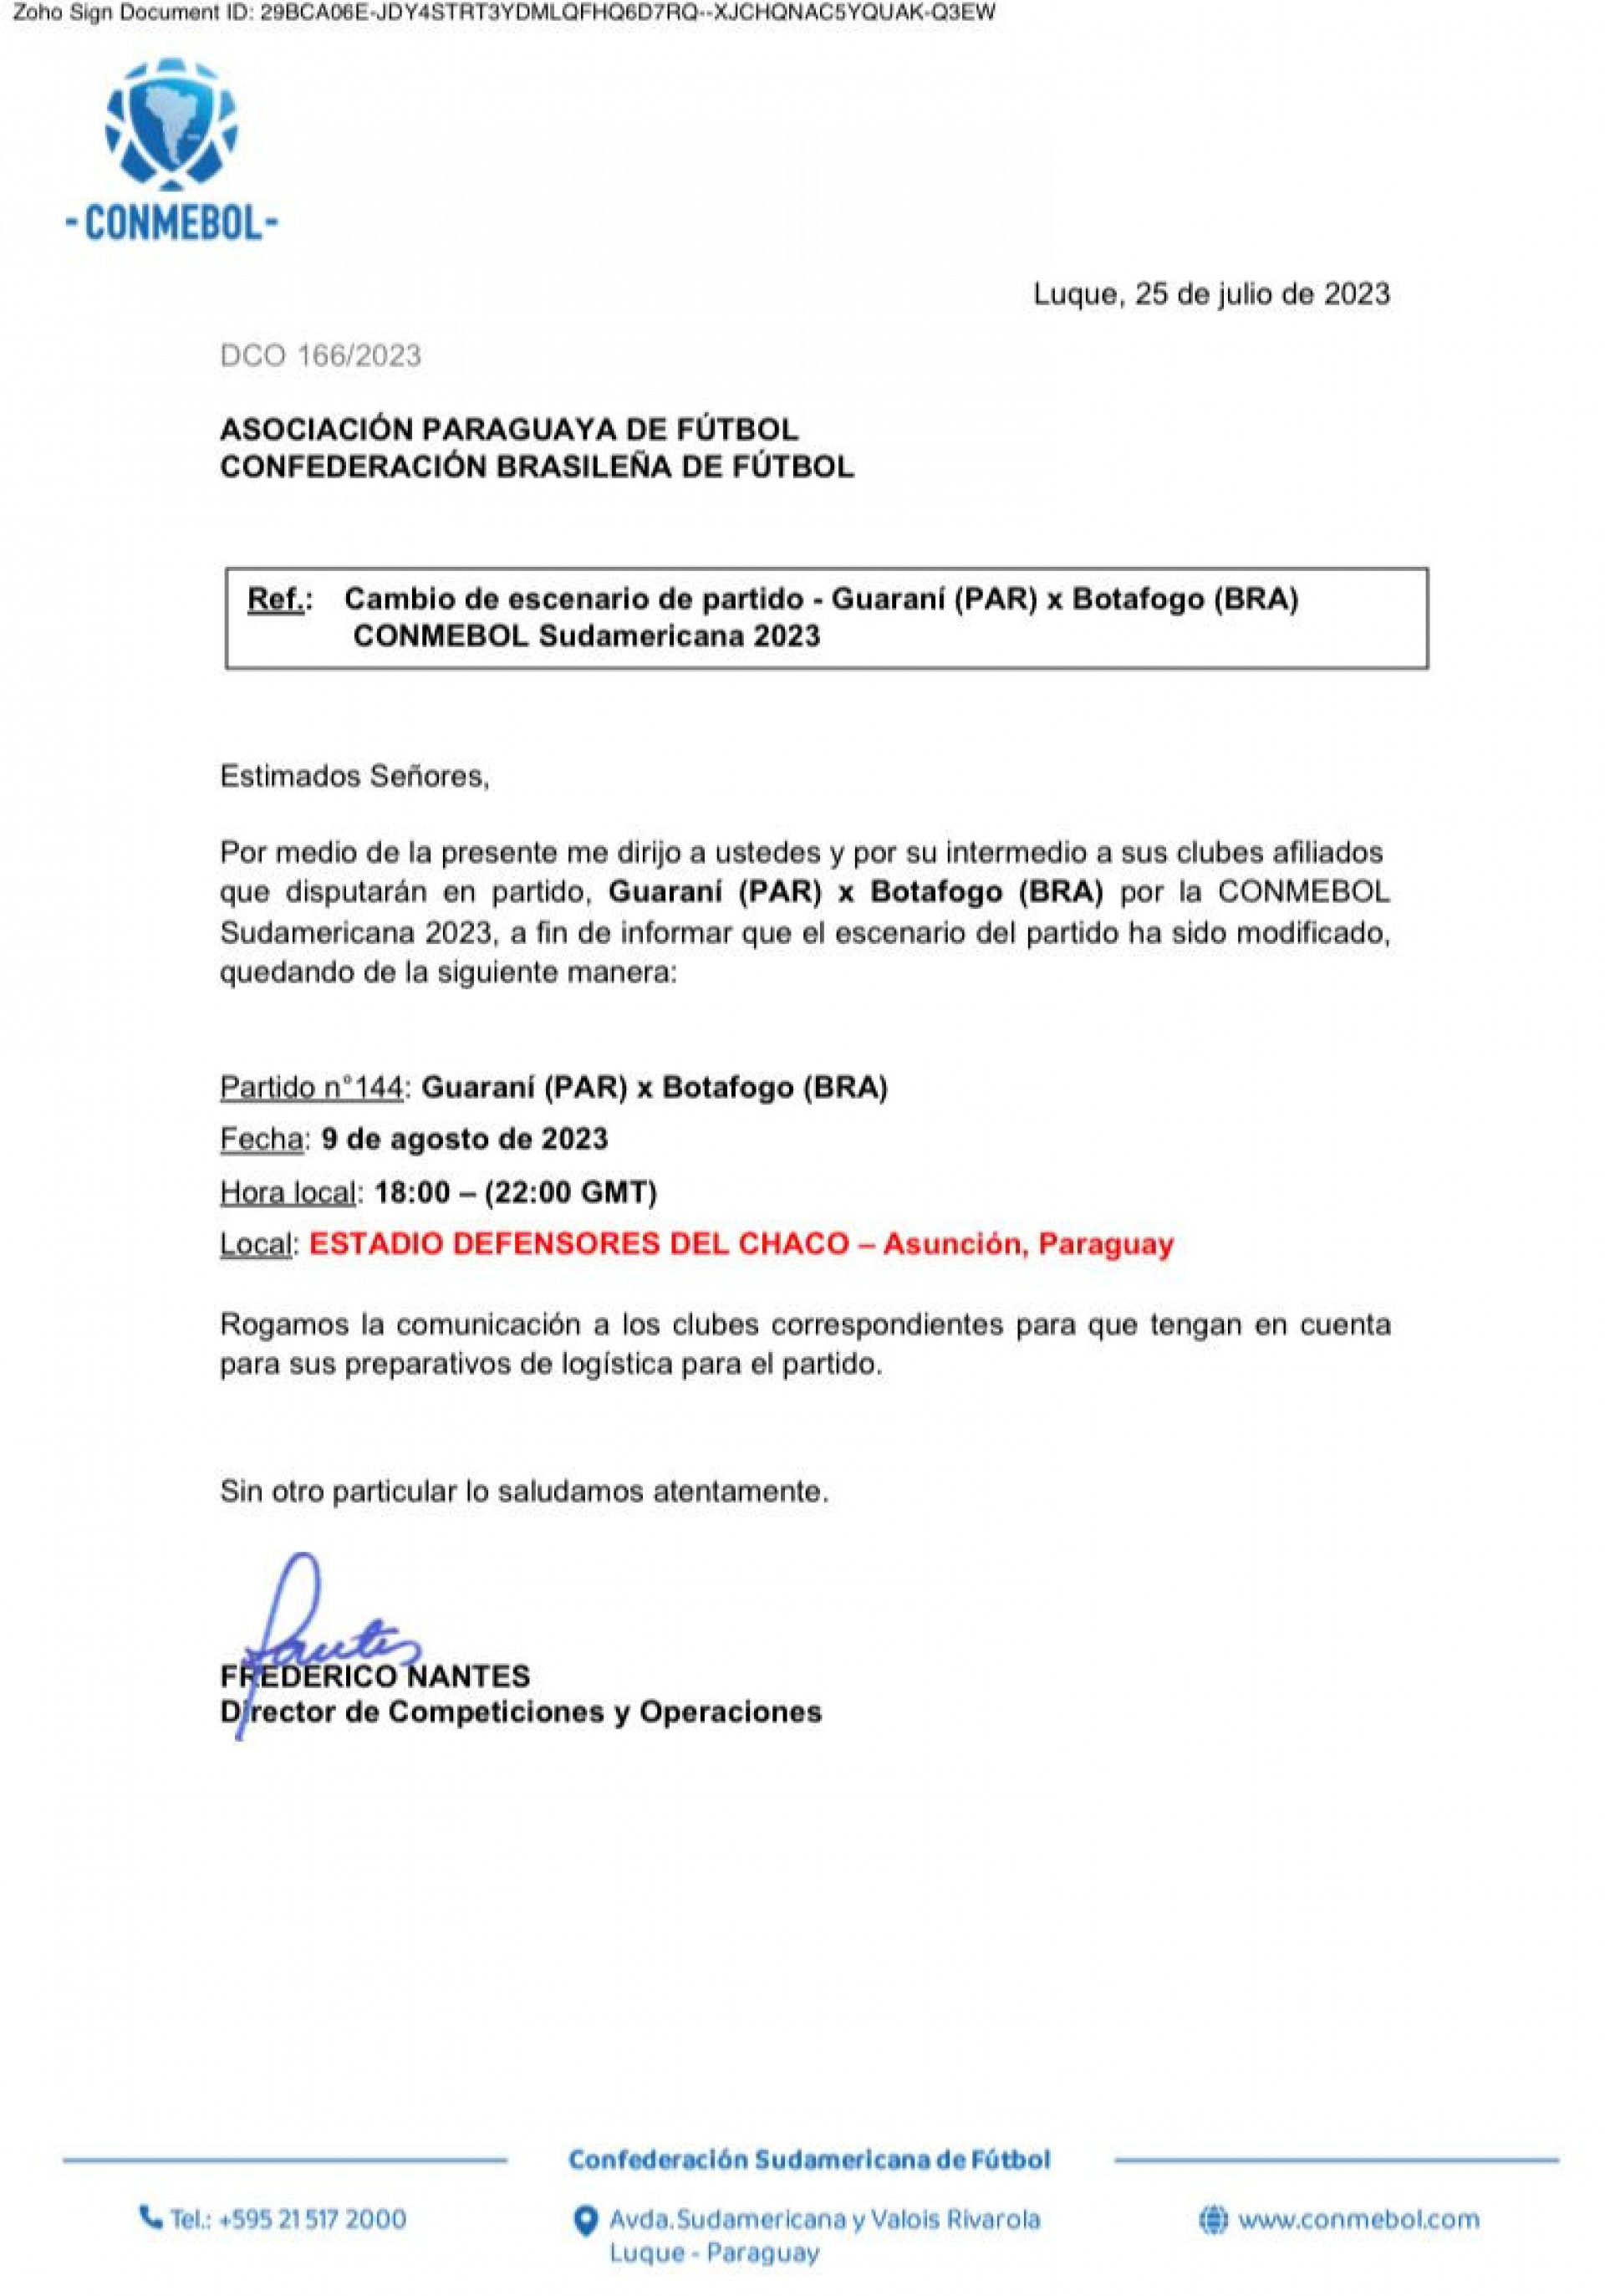 Documento da Conmebol com a confirmação da mudança do local do jogo da volta entre Guarani, do Paraguai, e Botafogo - Foto: Reprodução